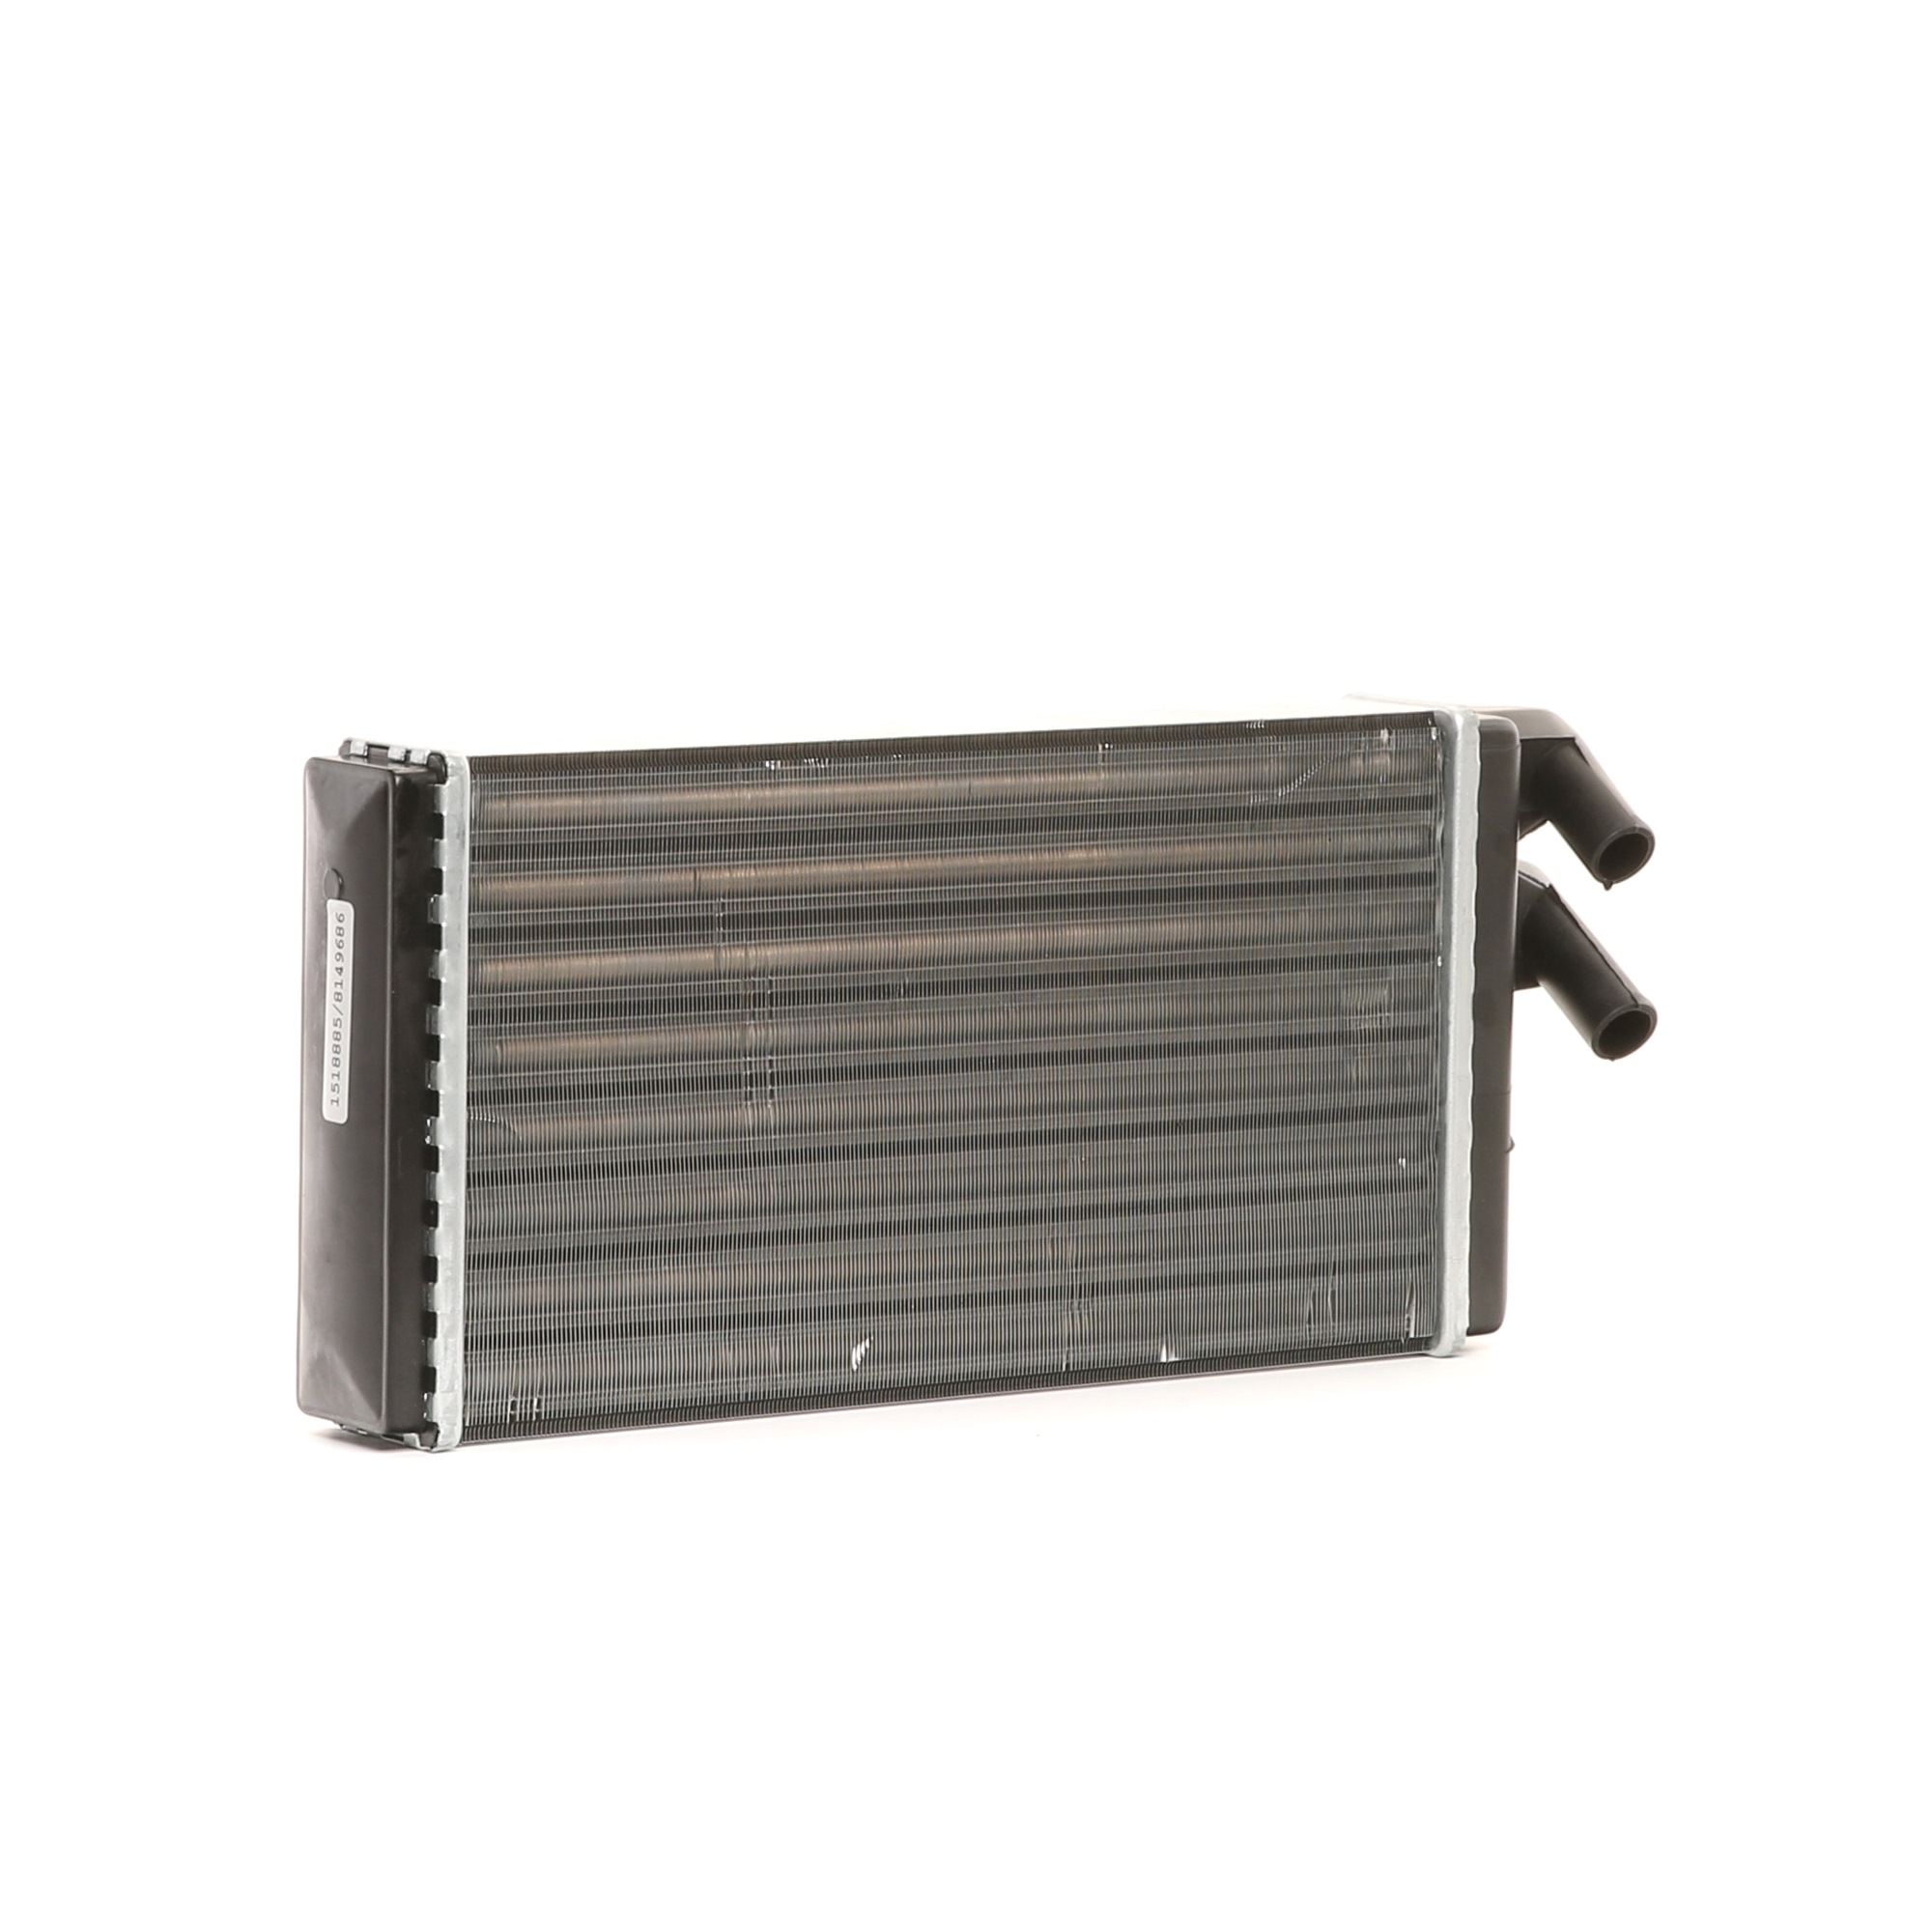 RIDEX 467H0013 Heater matrix Core Dimensions: 275 x 154 x 42 mm